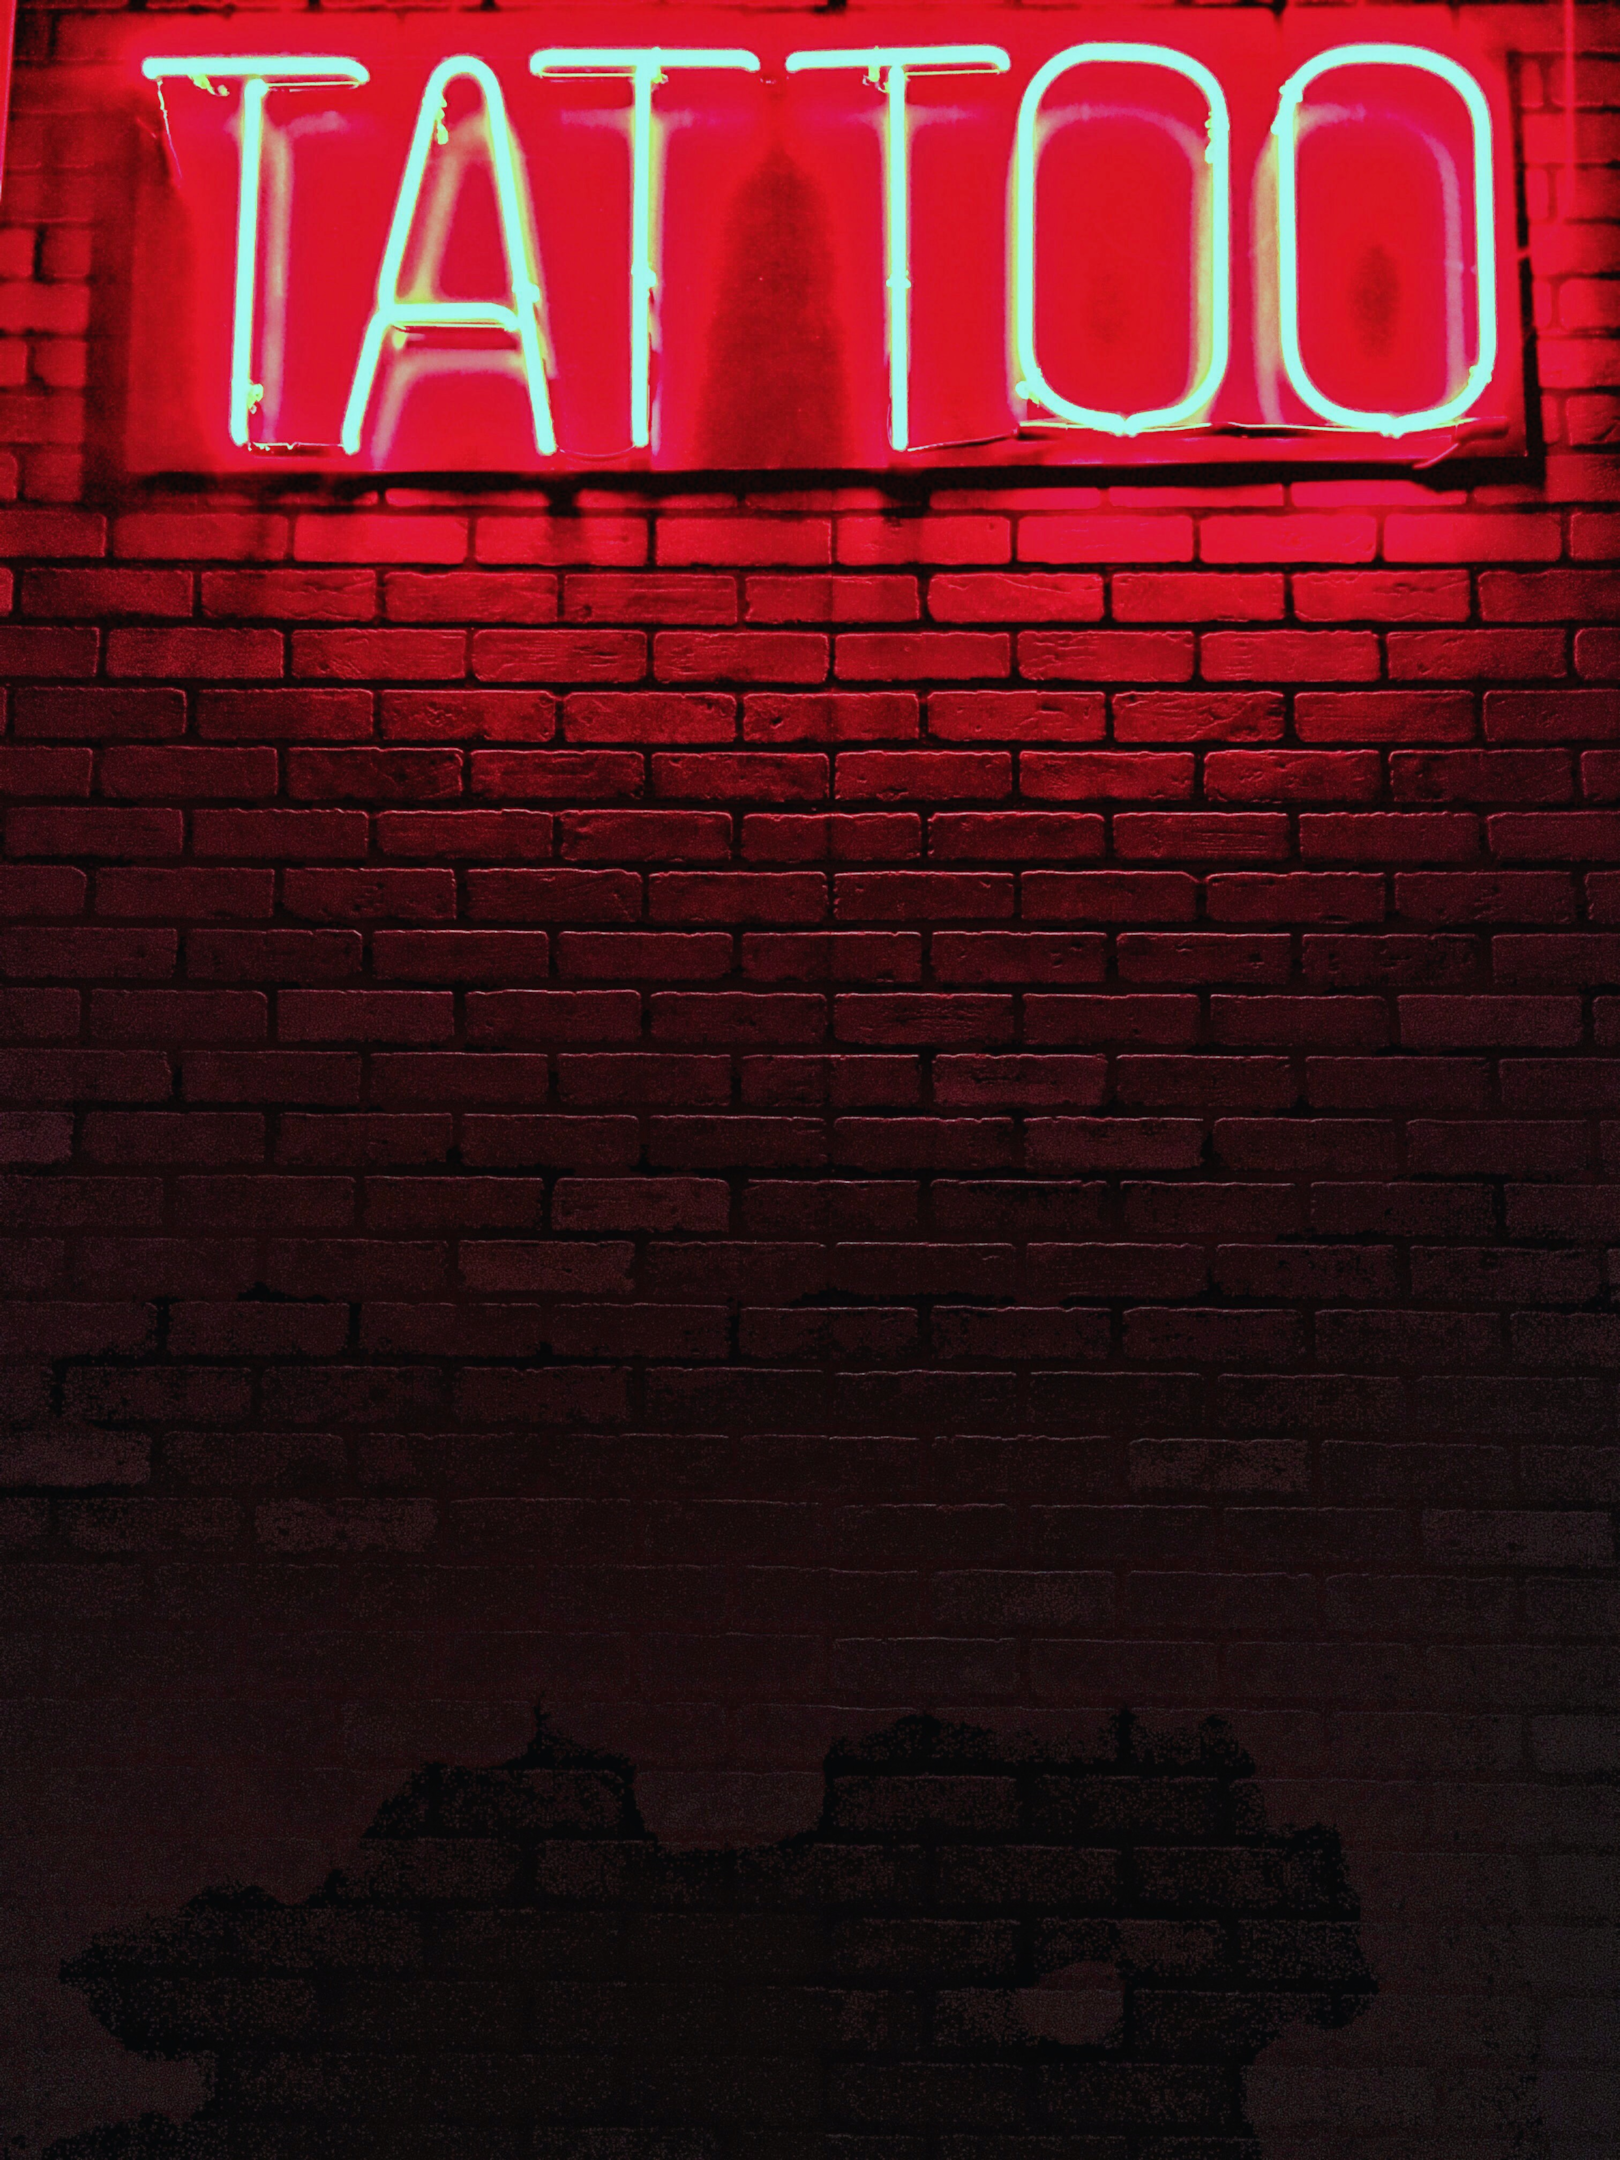 Tattoo shop